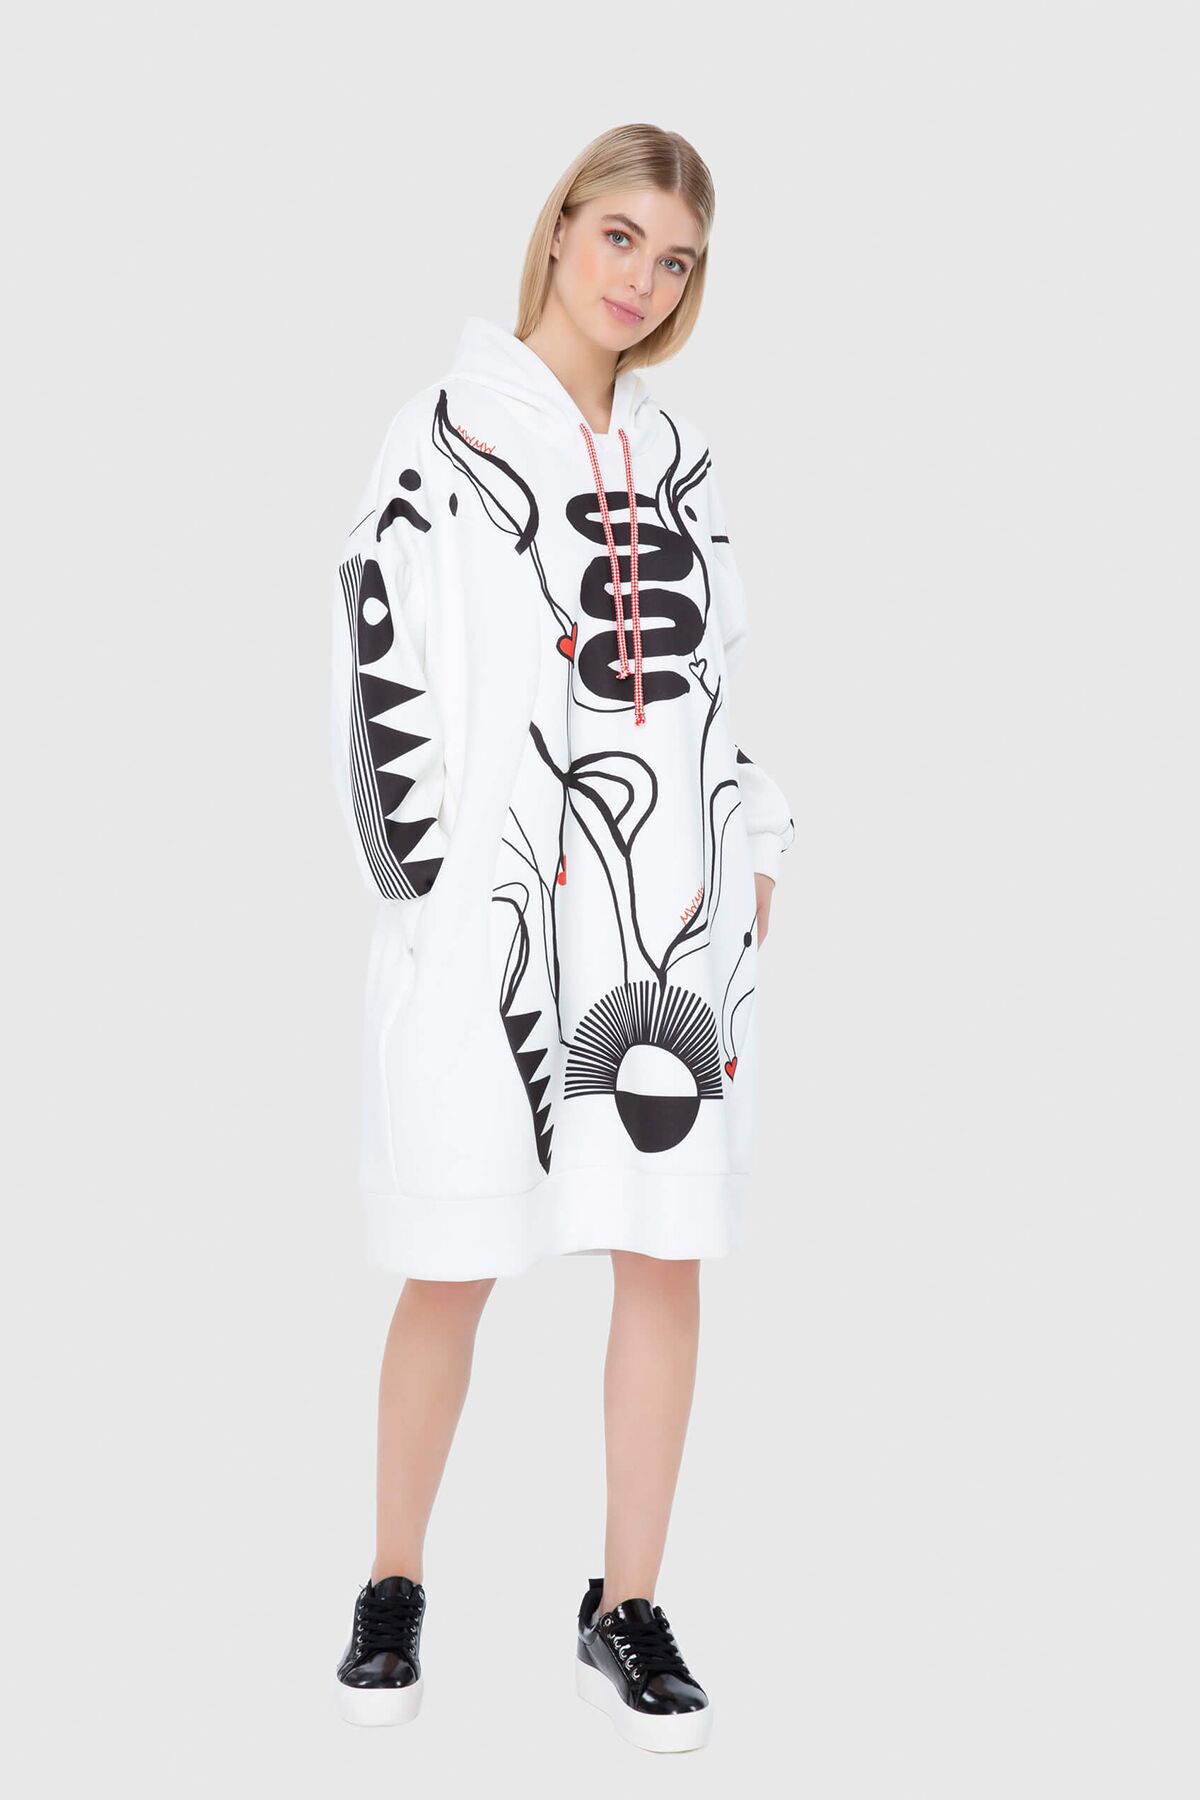 MANI MANI - Scuba Dress With White Print Pattern